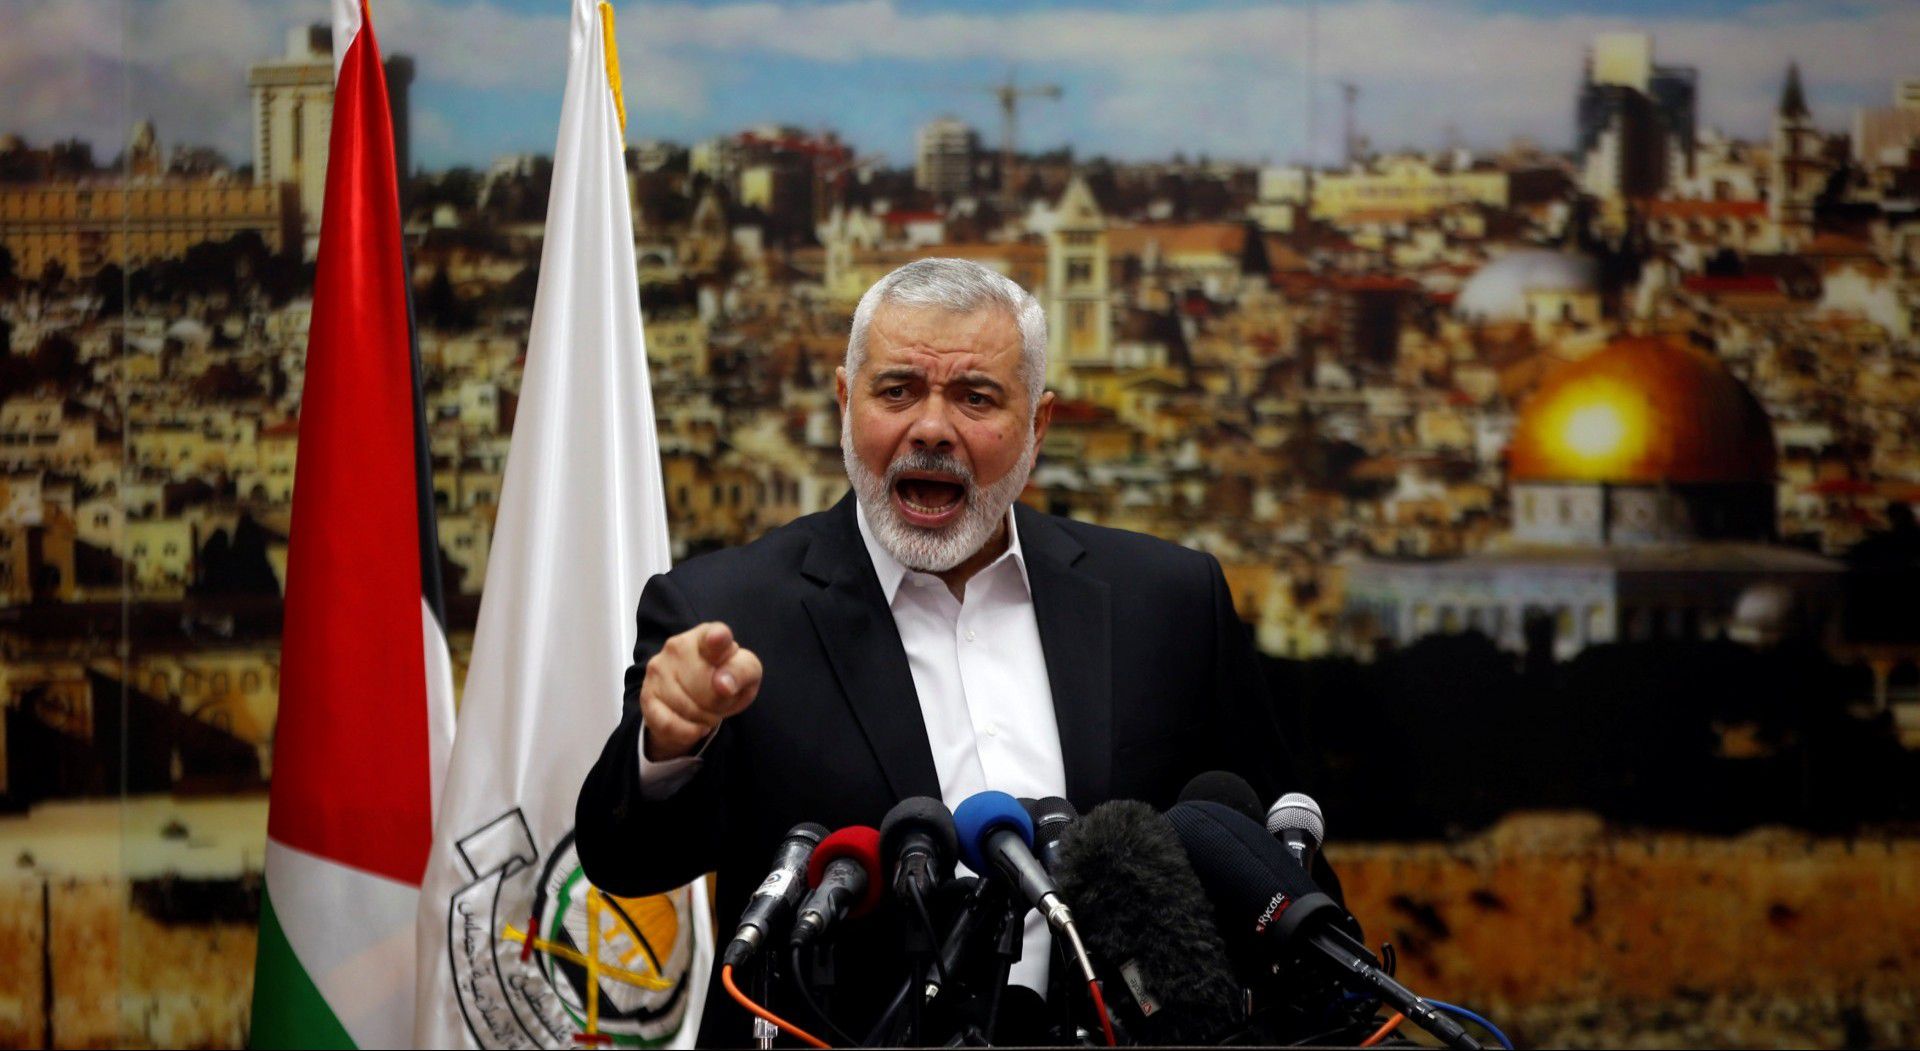 Desde hace años Ismail Haniyeh, líder de Hamas, vive en la lujosa Qatar mientras la población palestina vive una grave situación humanitaria en Gaza (REUTERS/Mohammed Salem)